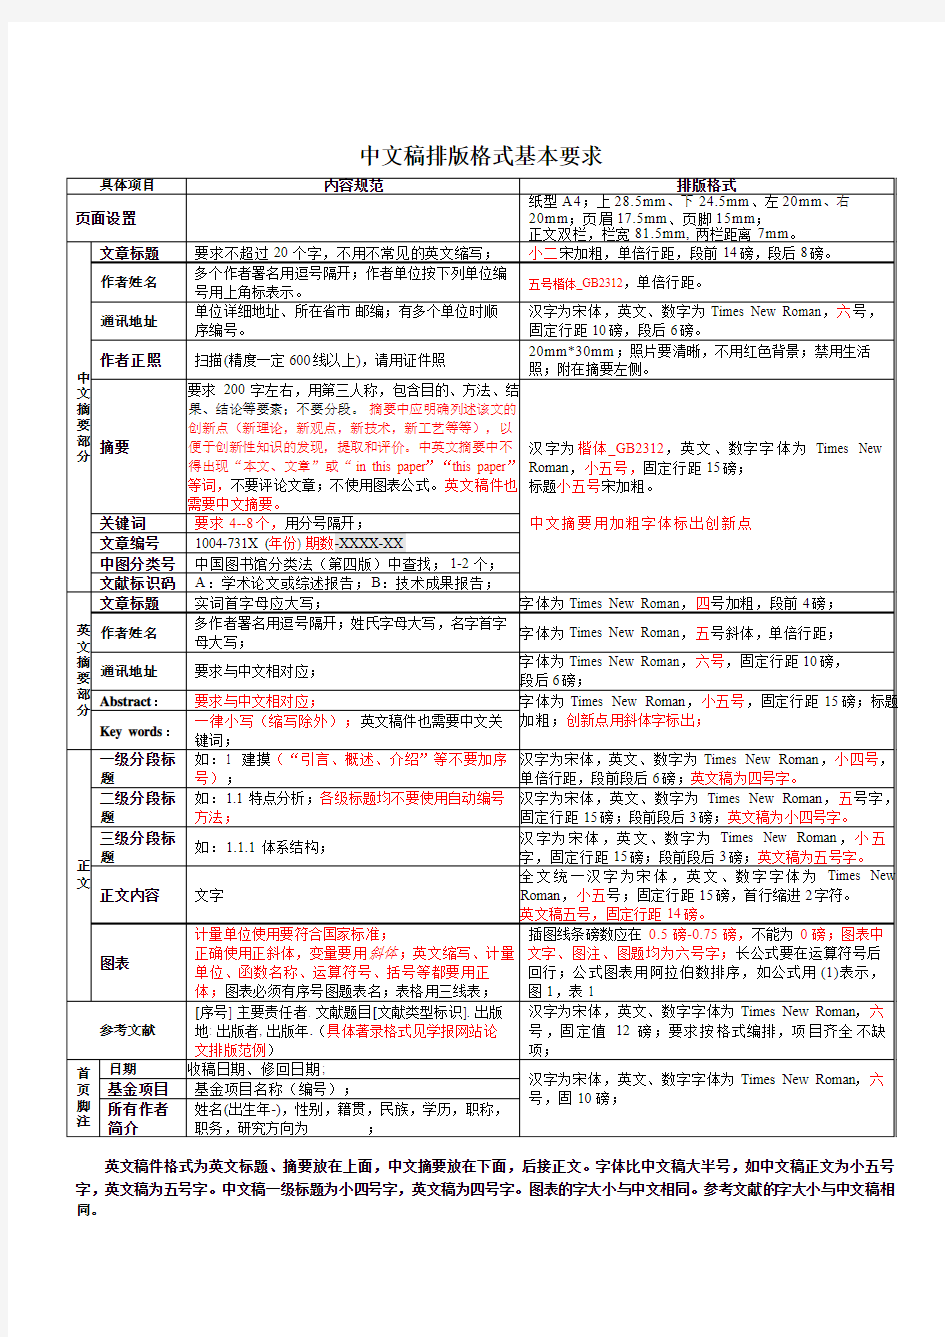 中文稿排版格式基本要求